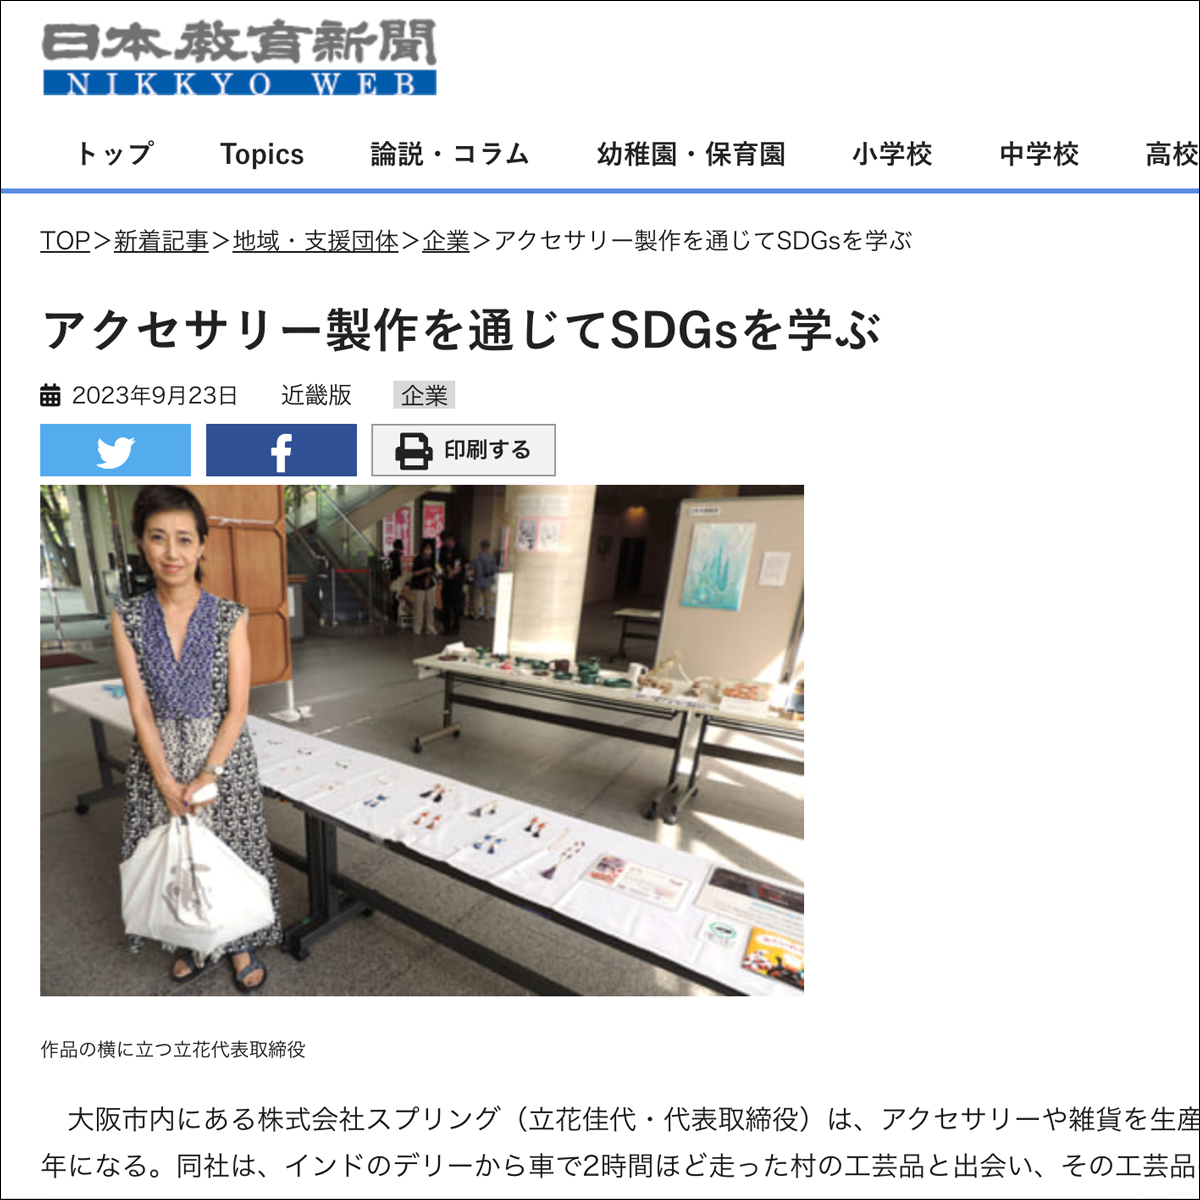 【日本教育新聞 NIKKYO WEB】アクセサリー製作を通じてSDGsを学ぶ